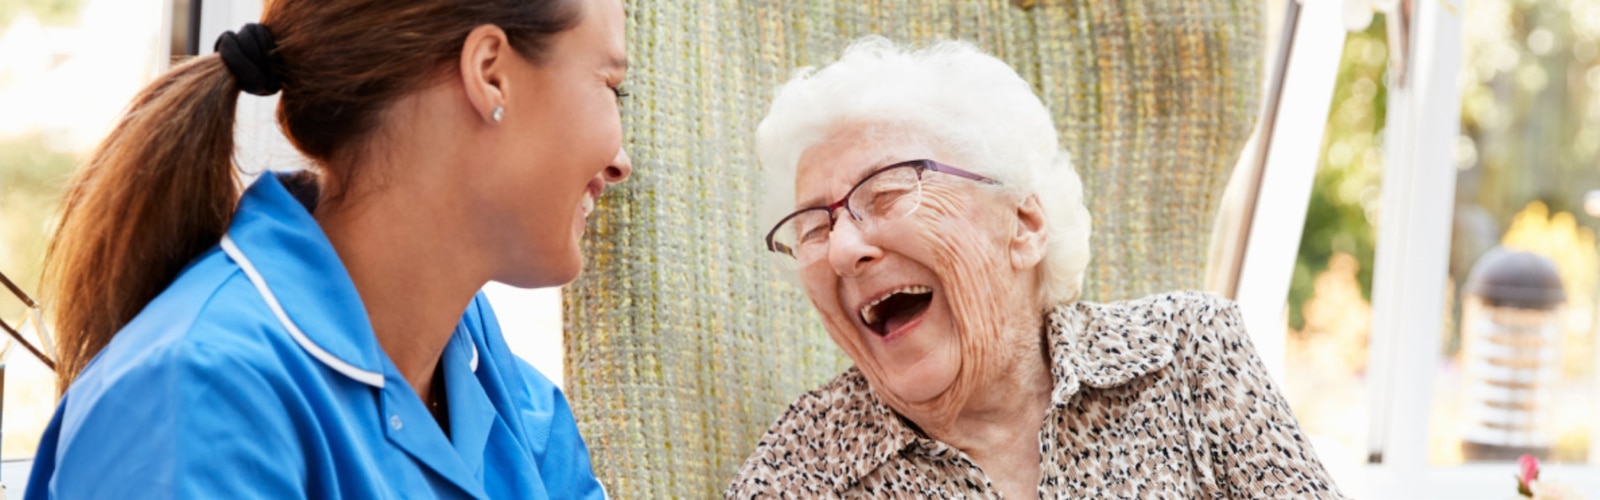 En sykepleier og en eldre kvinne ler